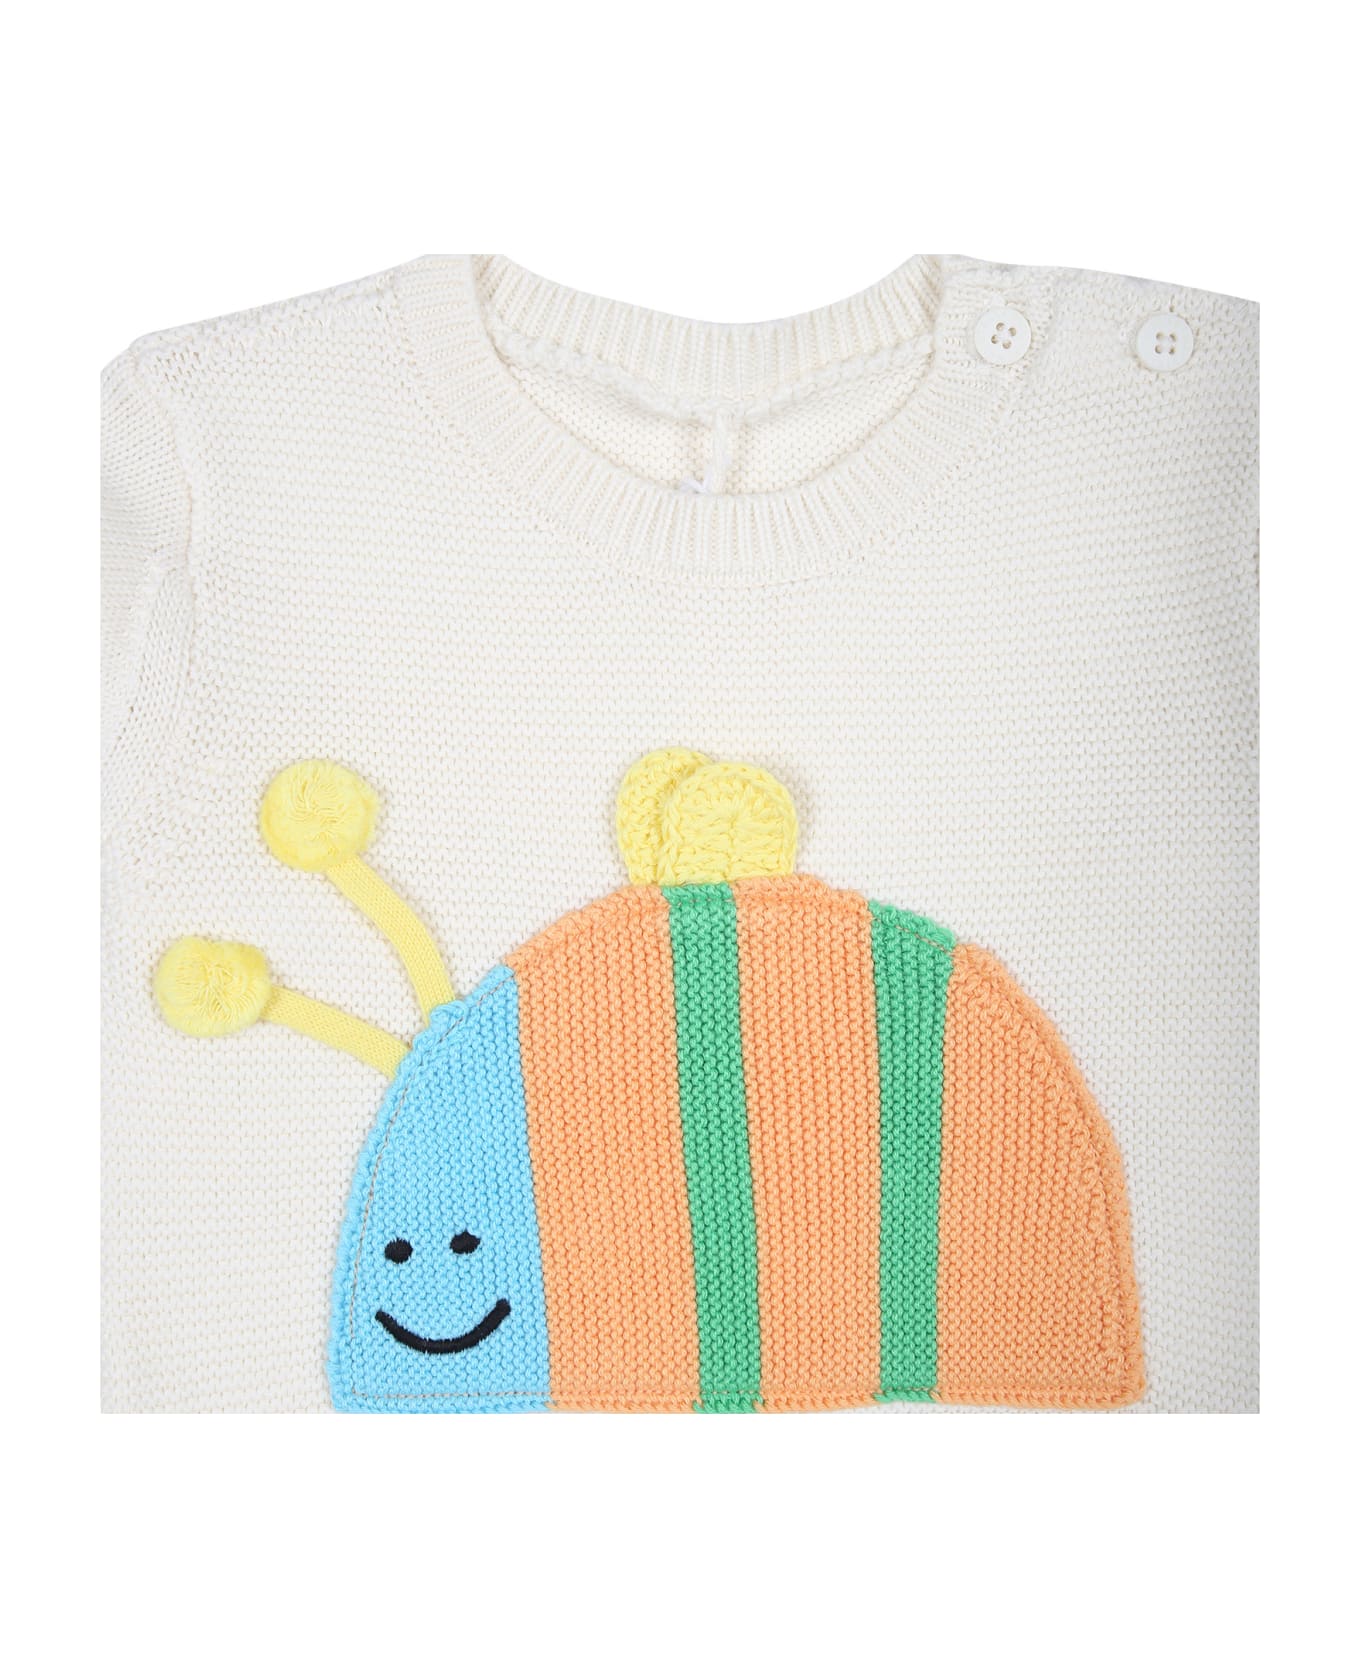 Stella McCartney Kids Ivory Sweater For Babies With Ladybug - Ivory